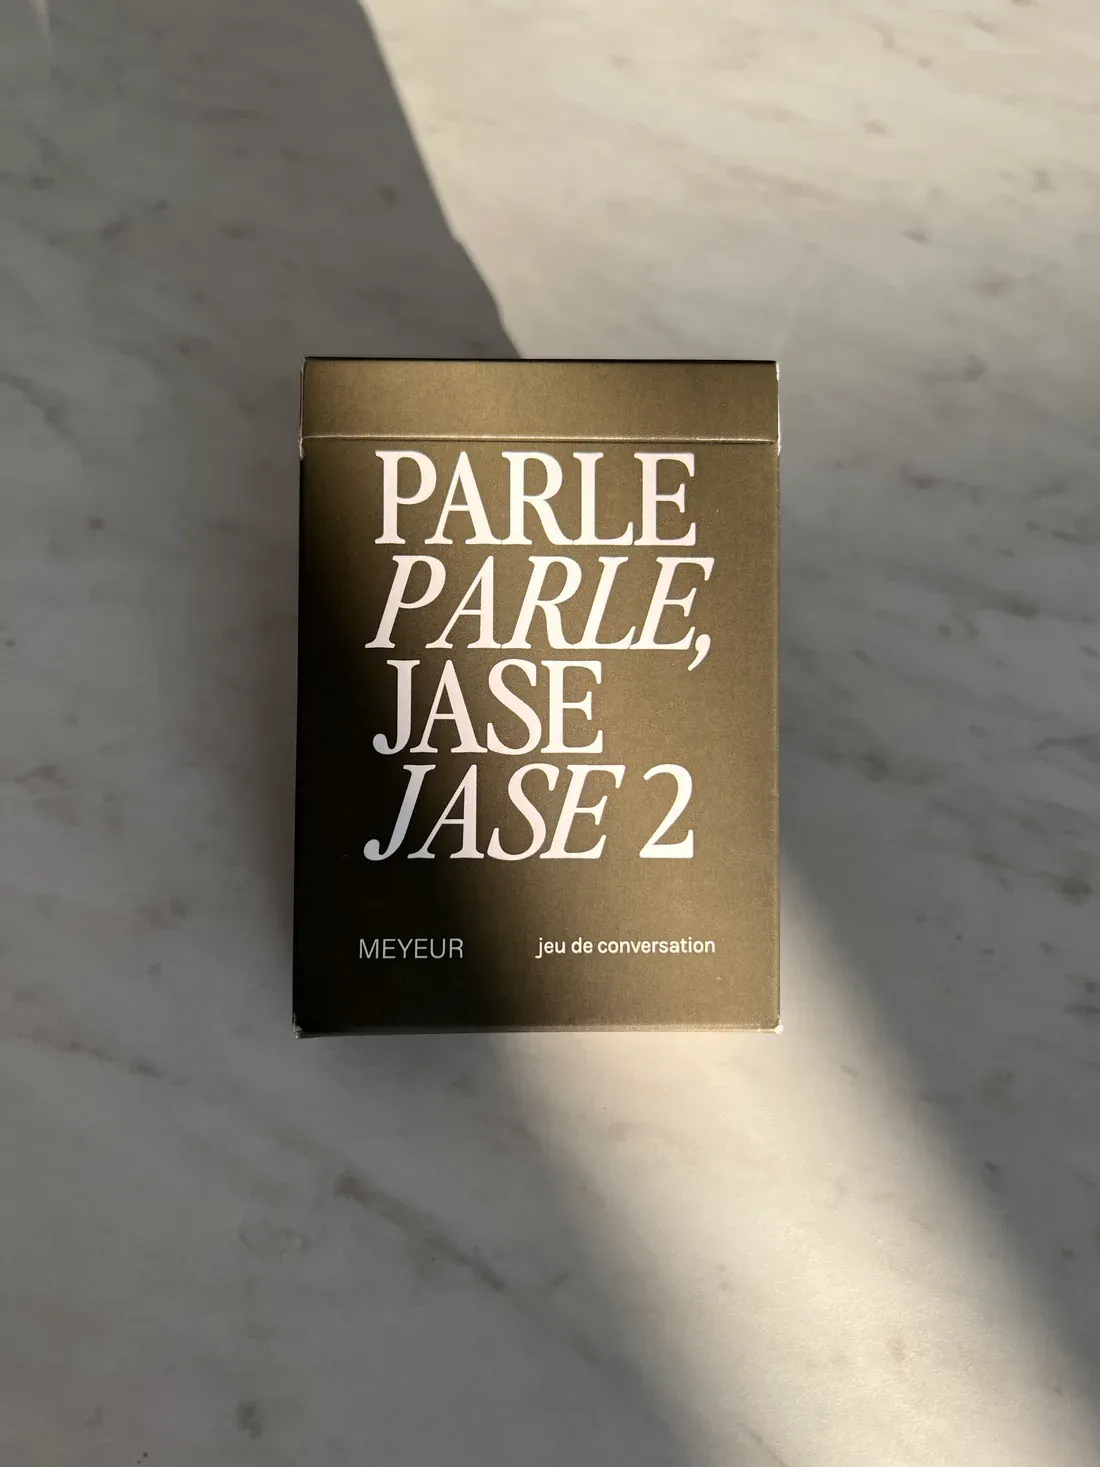 PARLE PARLE, JASE JASE 2